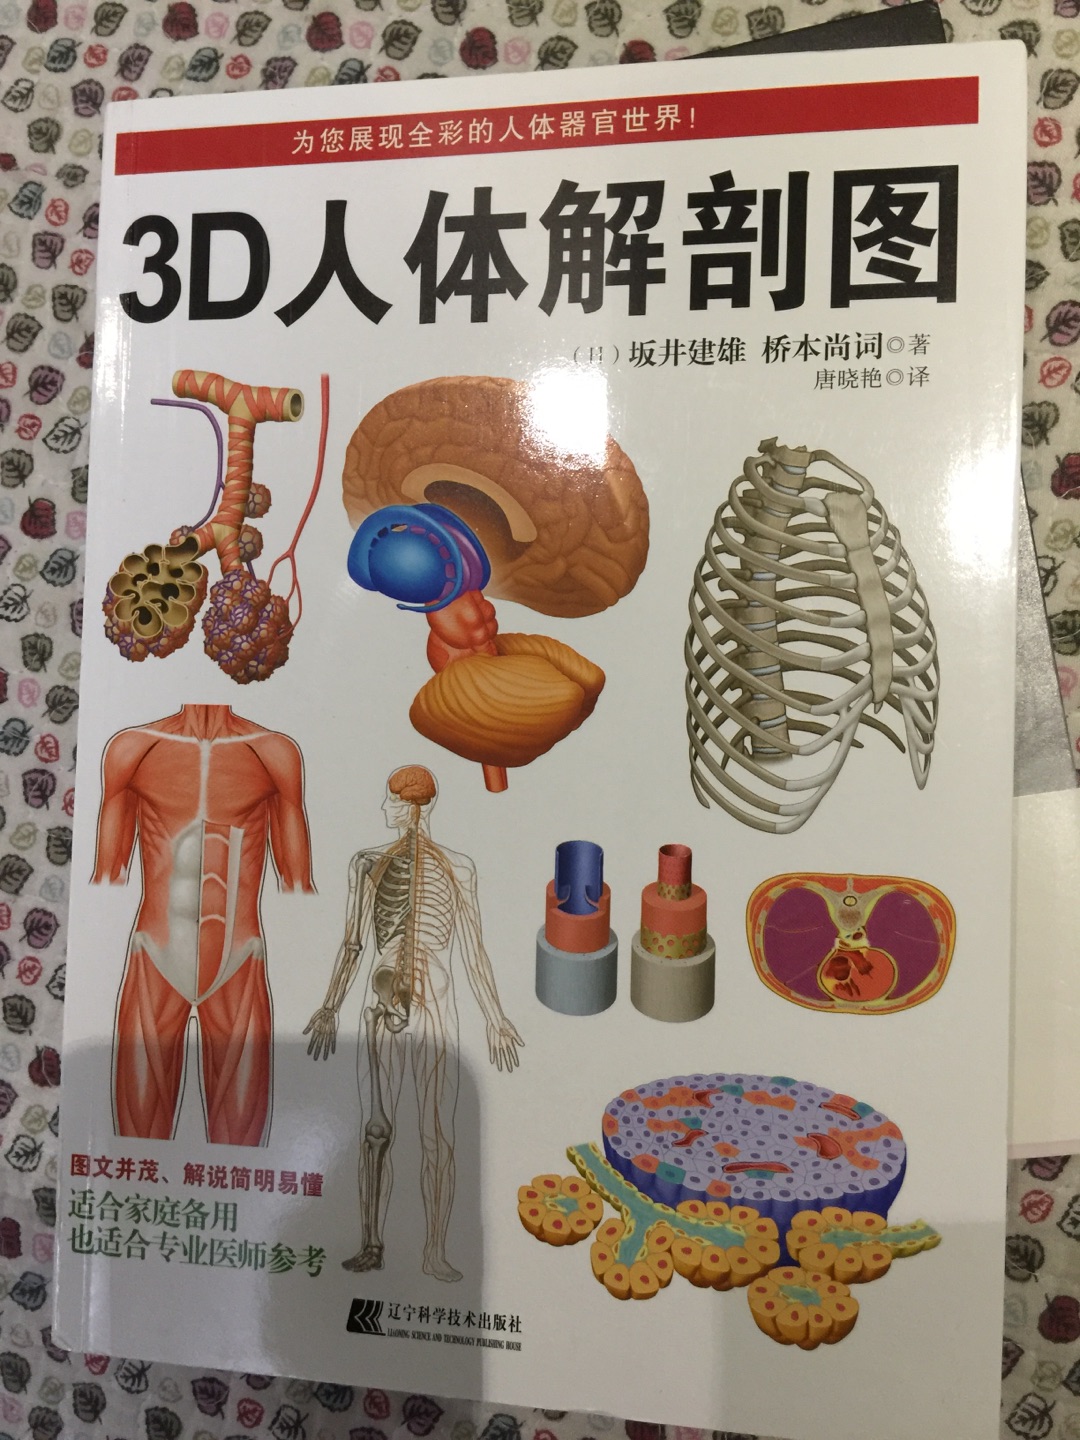 很有意思的一本书，门外汉可以了解身体架构，小孩子也能看